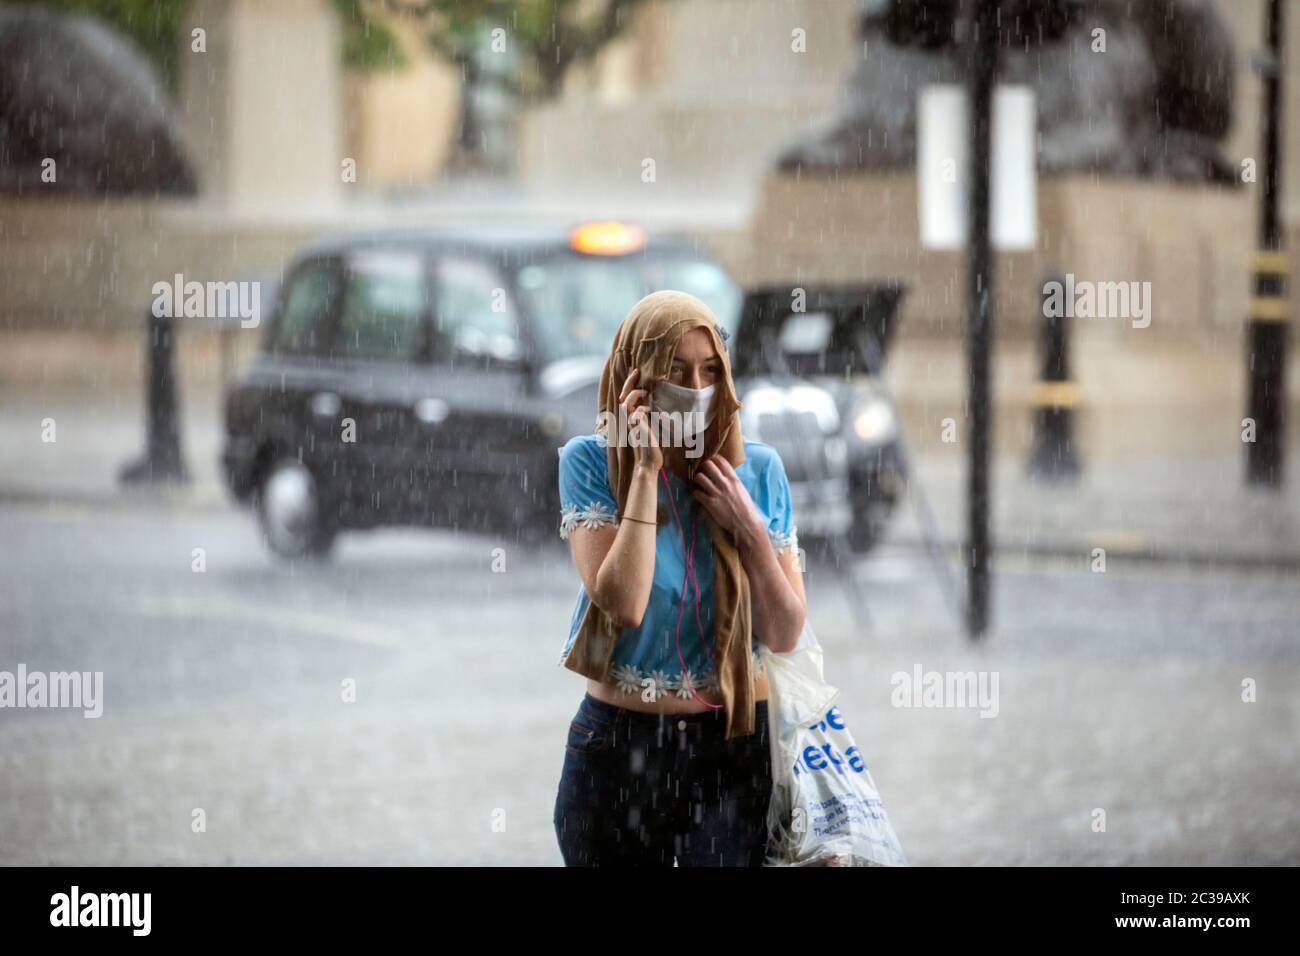 Bild zeigt: Sturmflut auf dem Traflagar Square führte zu Überschwemmungen viele im Regen gefangen, während andere geschützt Bild von Gavin Rodgers/ Pixel8000 Stockfoto